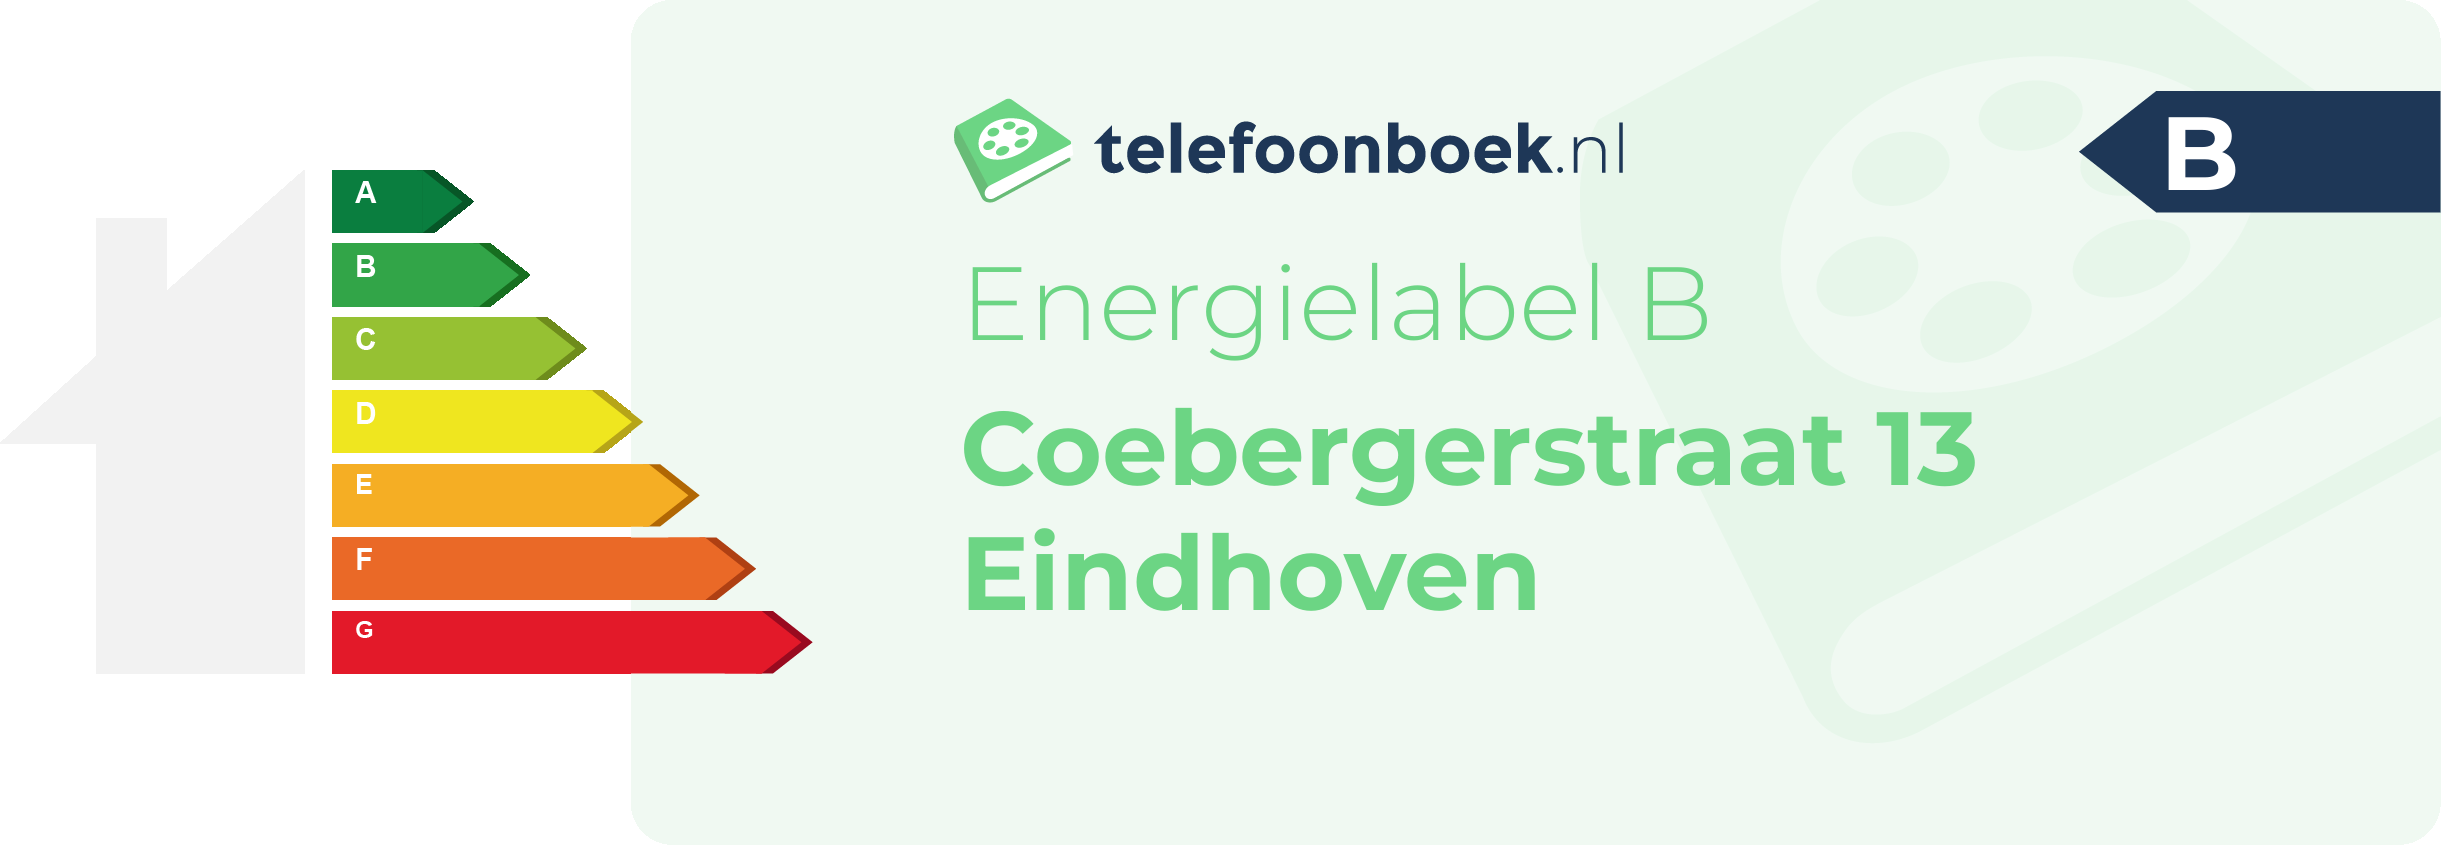 Energielabel Coebergerstraat 13 Eindhoven